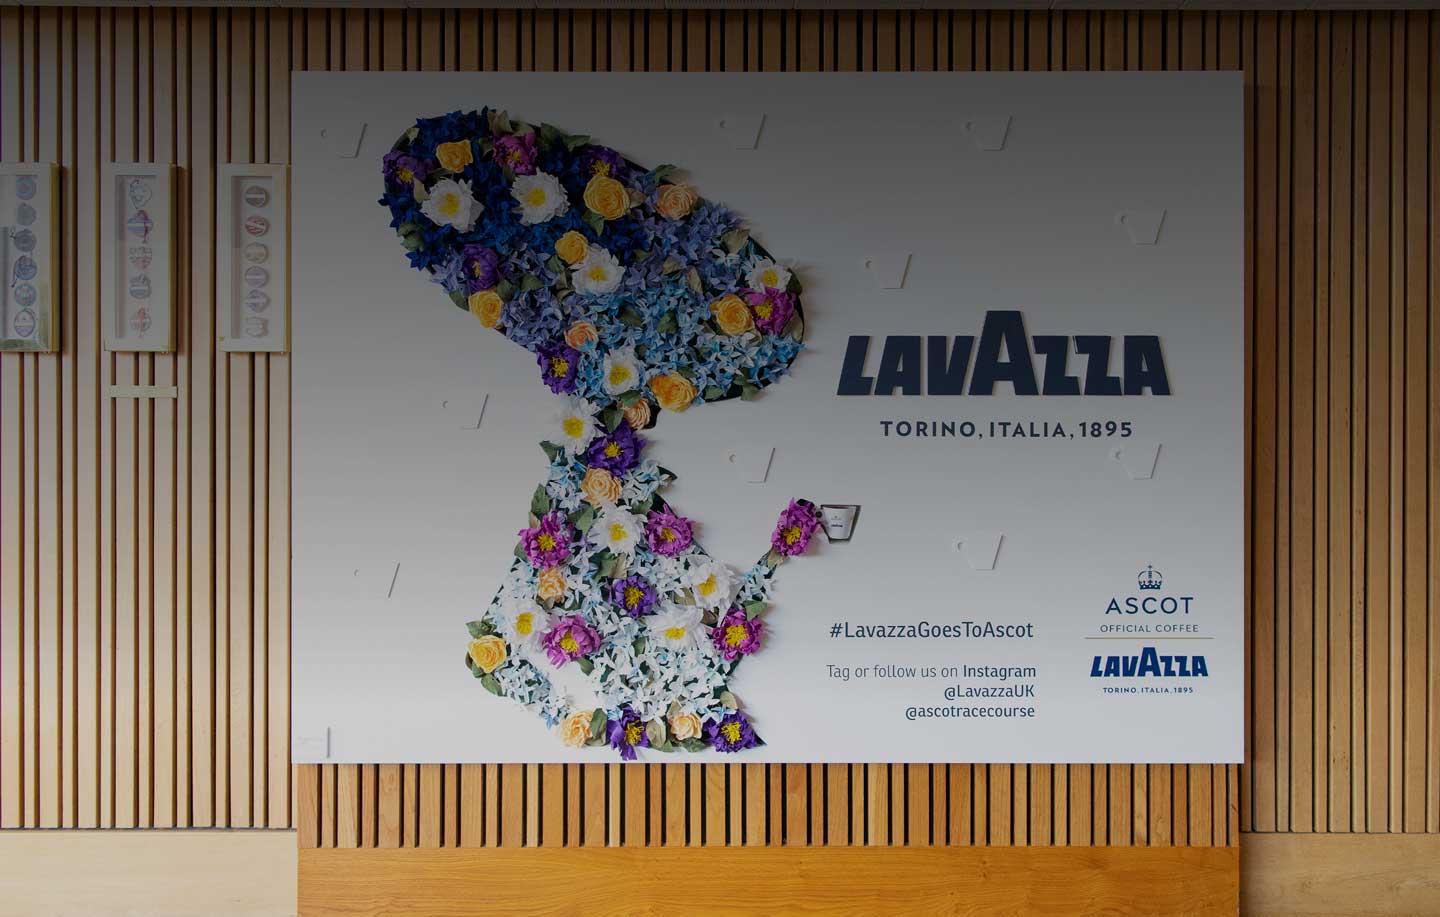 Royal Ascot et Lavazza: le partage des mêmes valeurs